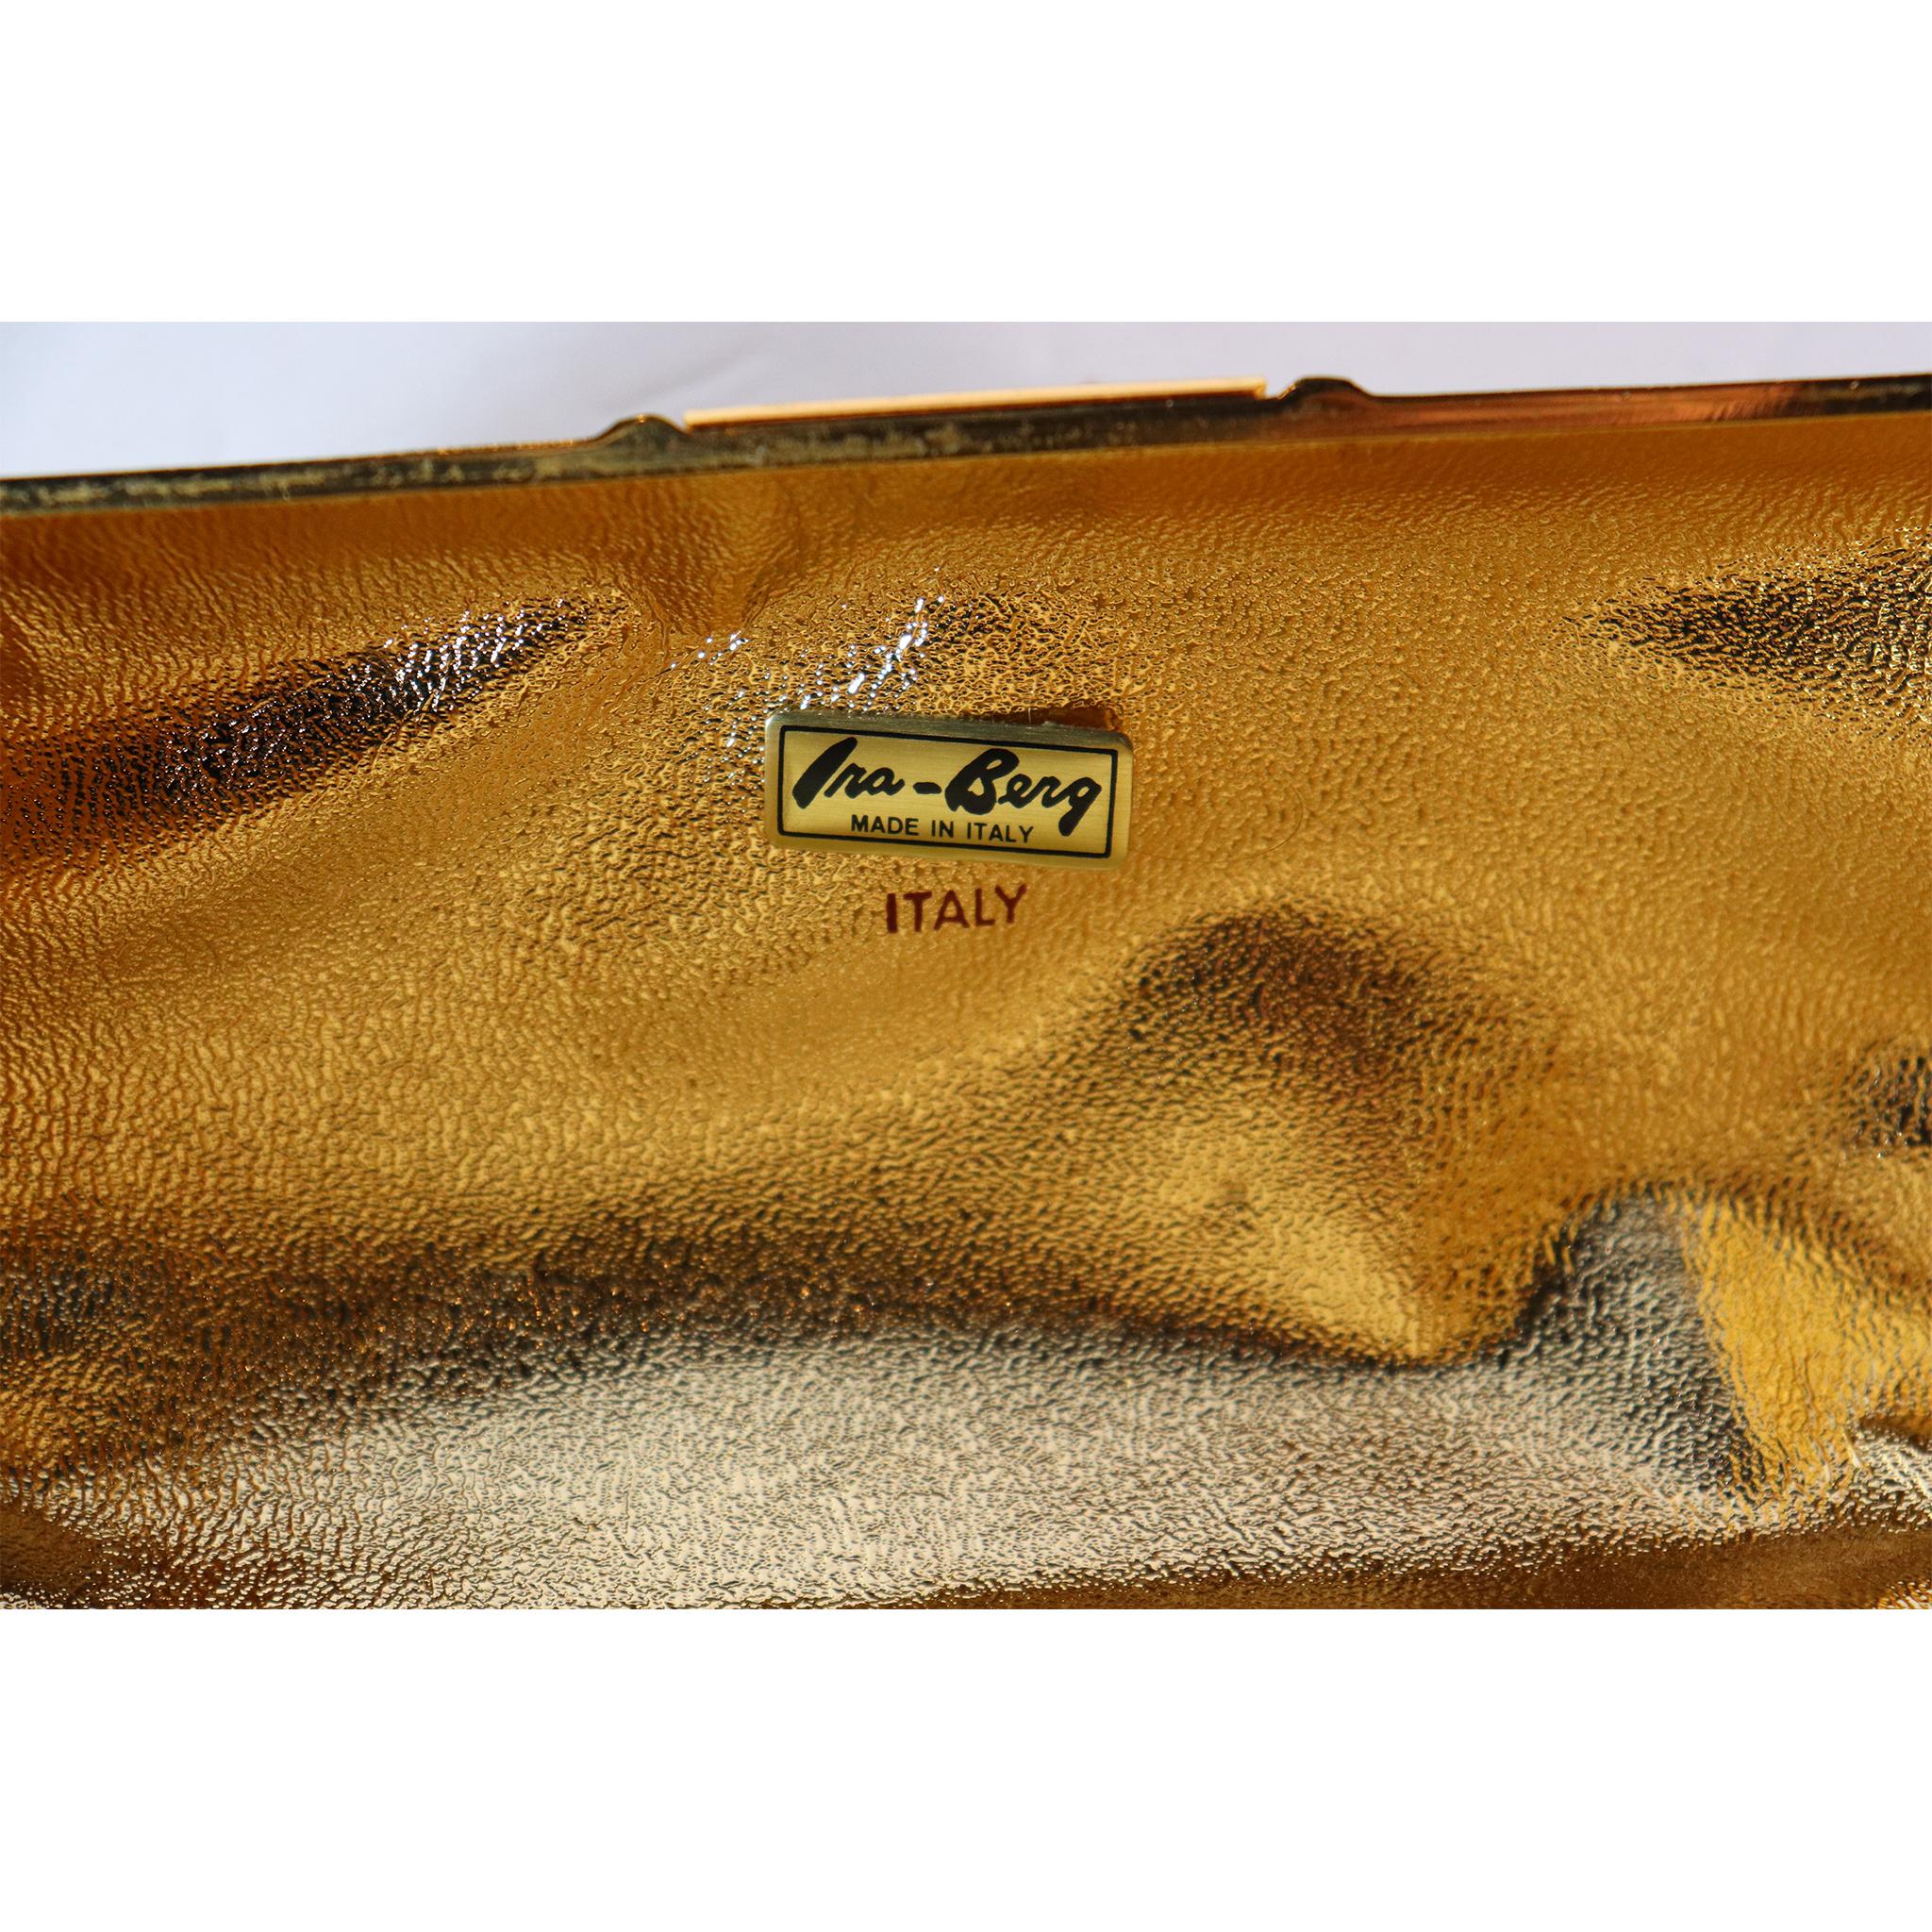 Rodo Golden Minaudière Handbag with Buckle Strap 4